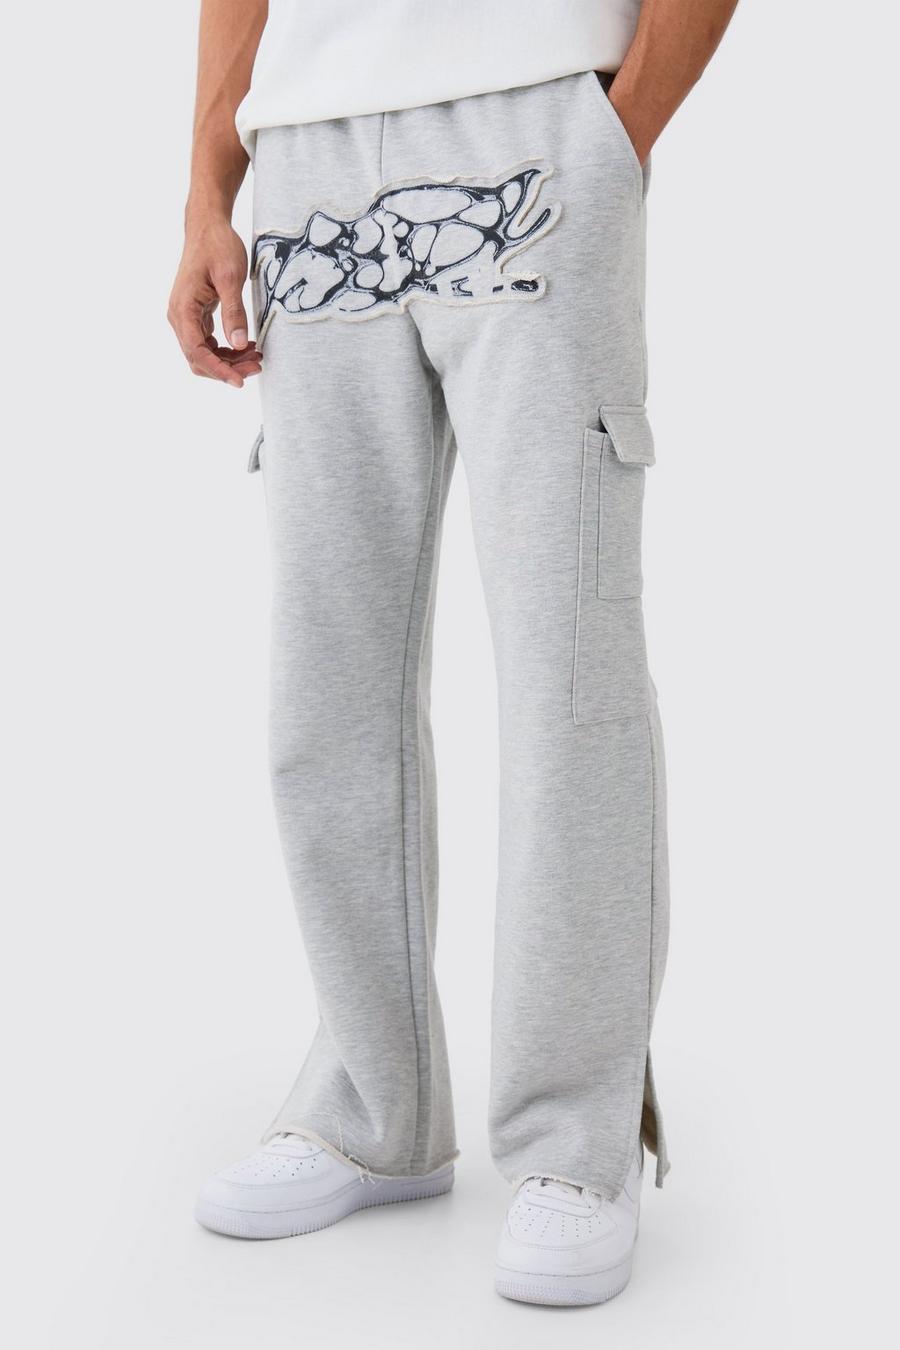 Pantaloni tuta dritti pesanti effetto smagliato con applique e spacco sul fondo, Grey marl